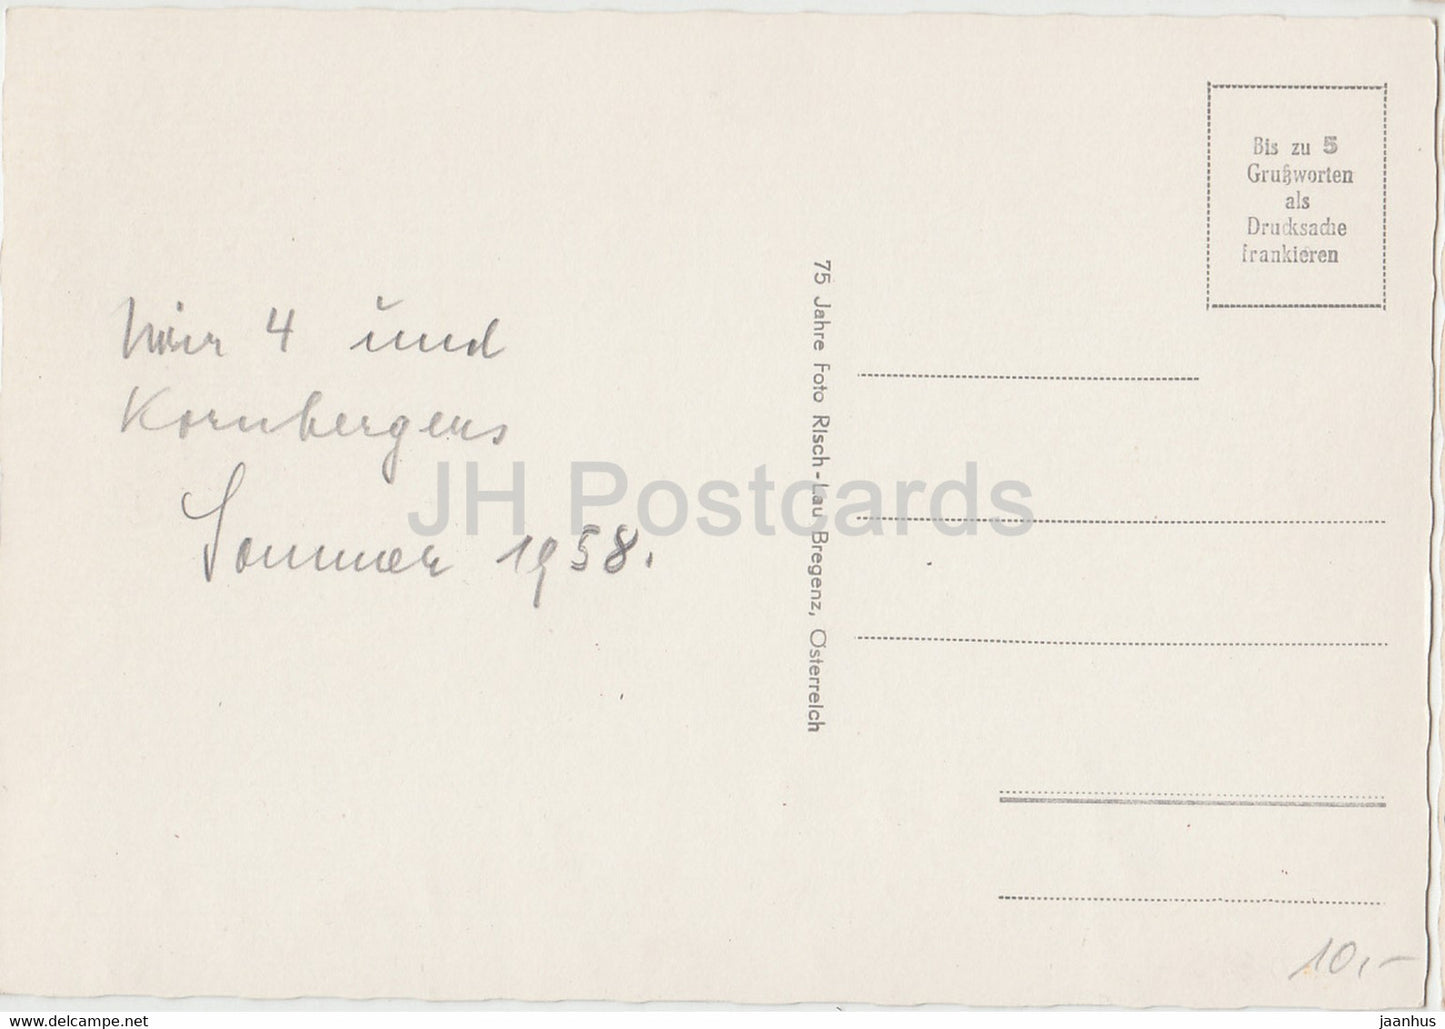 Lunersee mit Douglashutte 1969 m - carte postale ancienne - 1958 - Autriche - utilisé